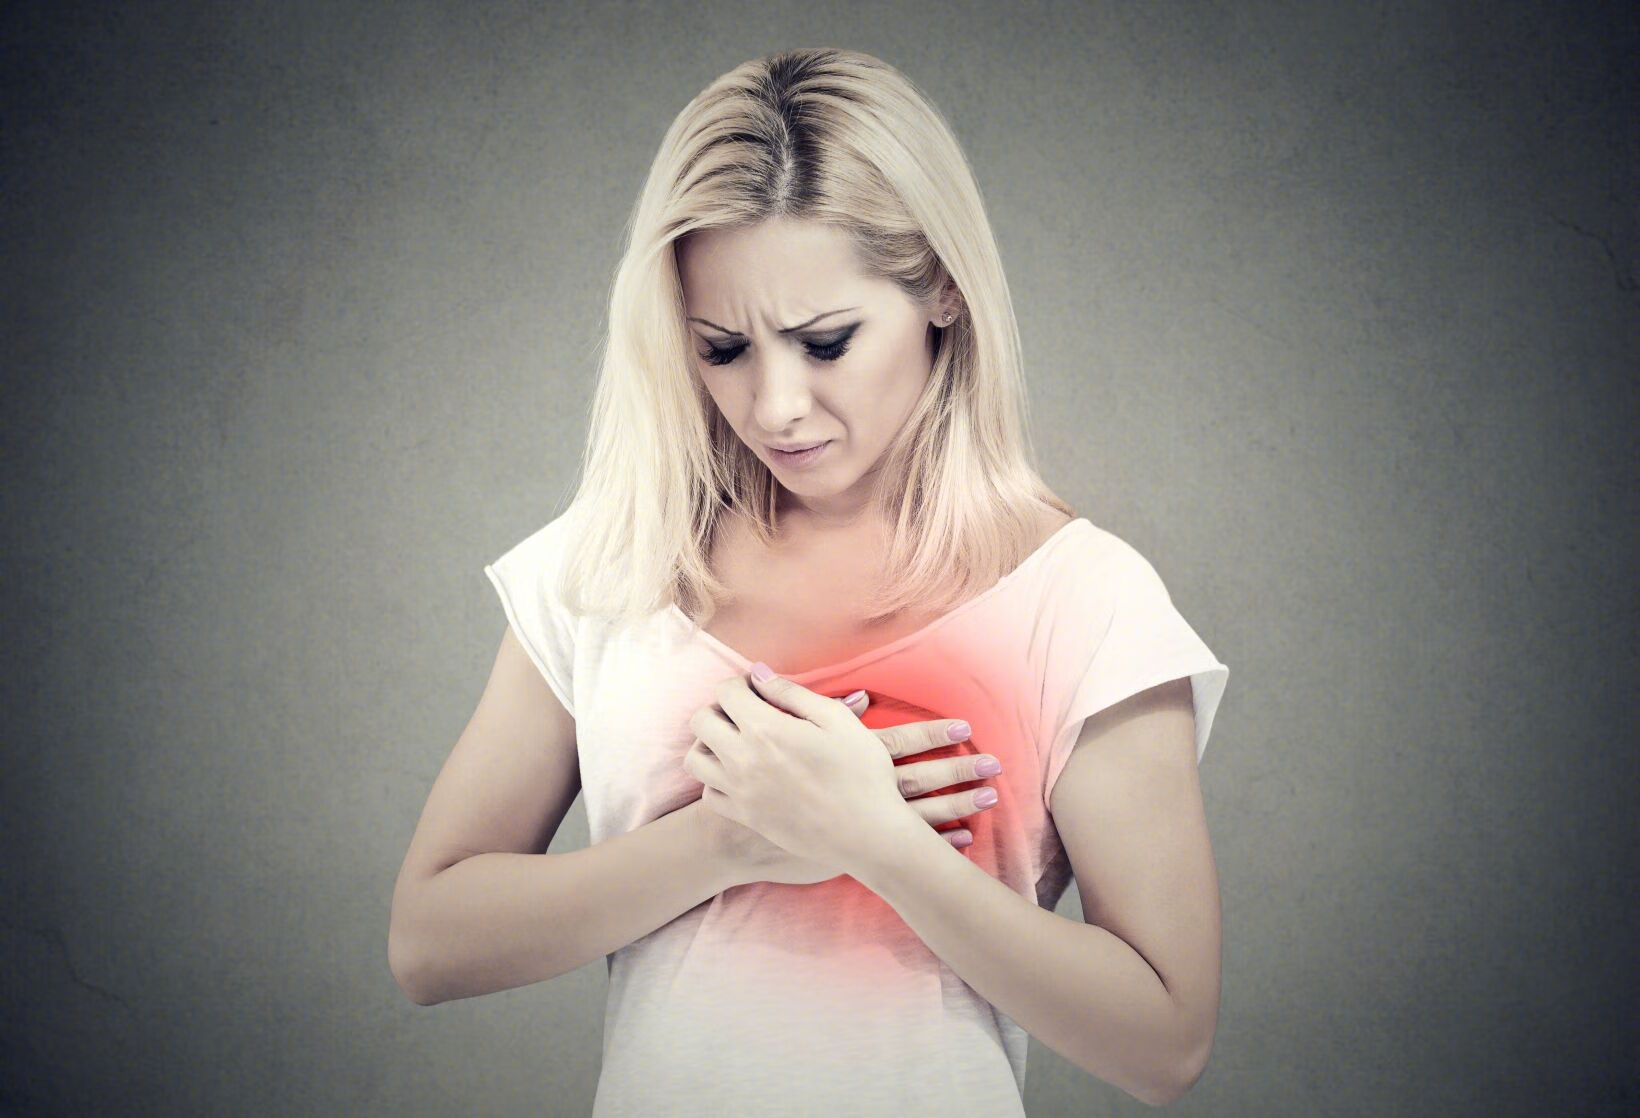 产褥期乳腺炎的主要表现有哪几个方面?